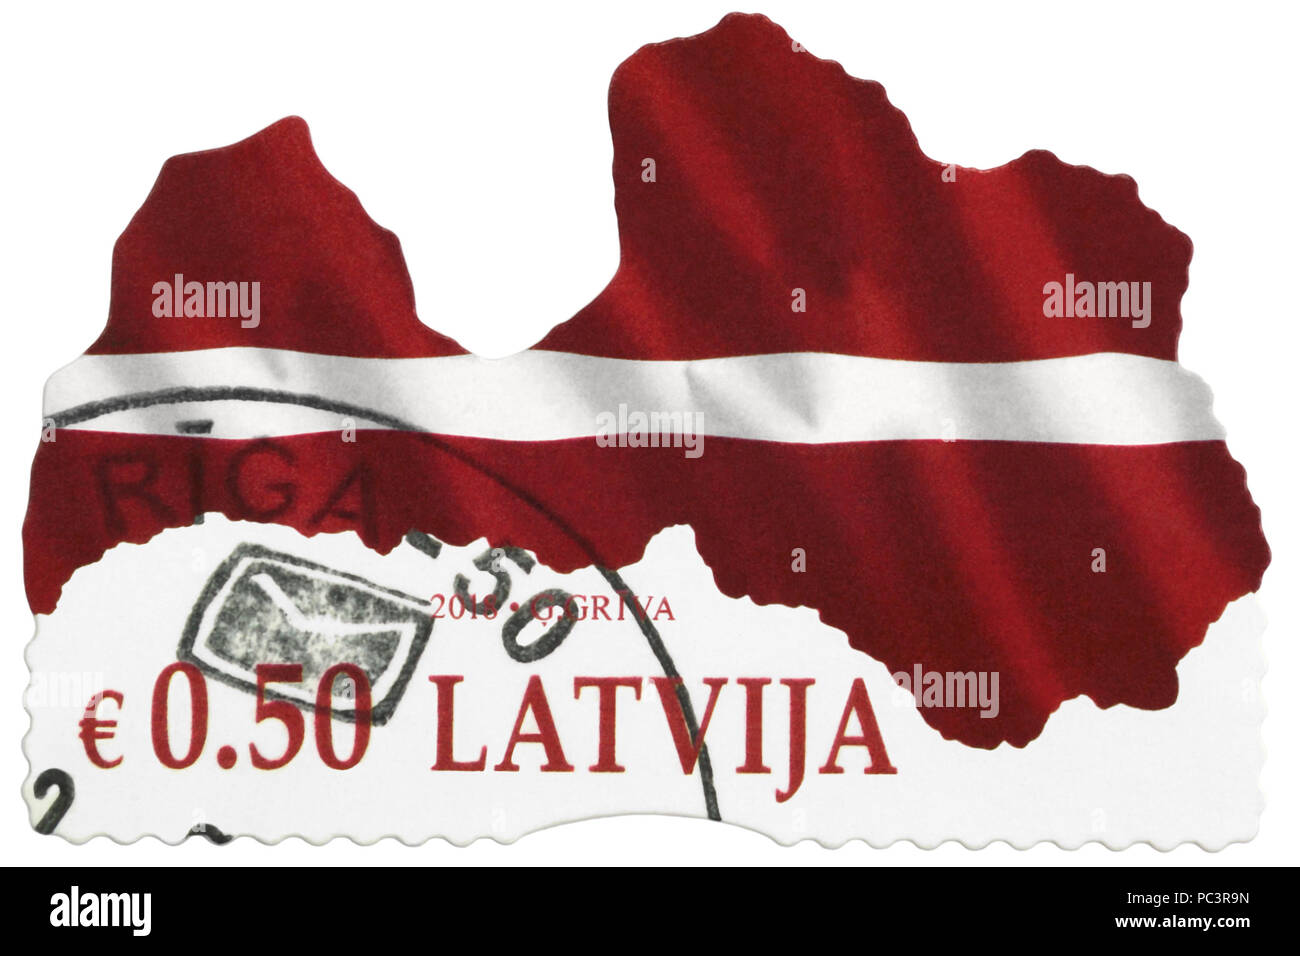 Lettonia - 2018: un contemporaneo francobollo stampato in Lettonia, stilizzata rosso bianco bandiera della Repubblica di Lettonia, Unione Europea (UE) paese baltico Foto Stock